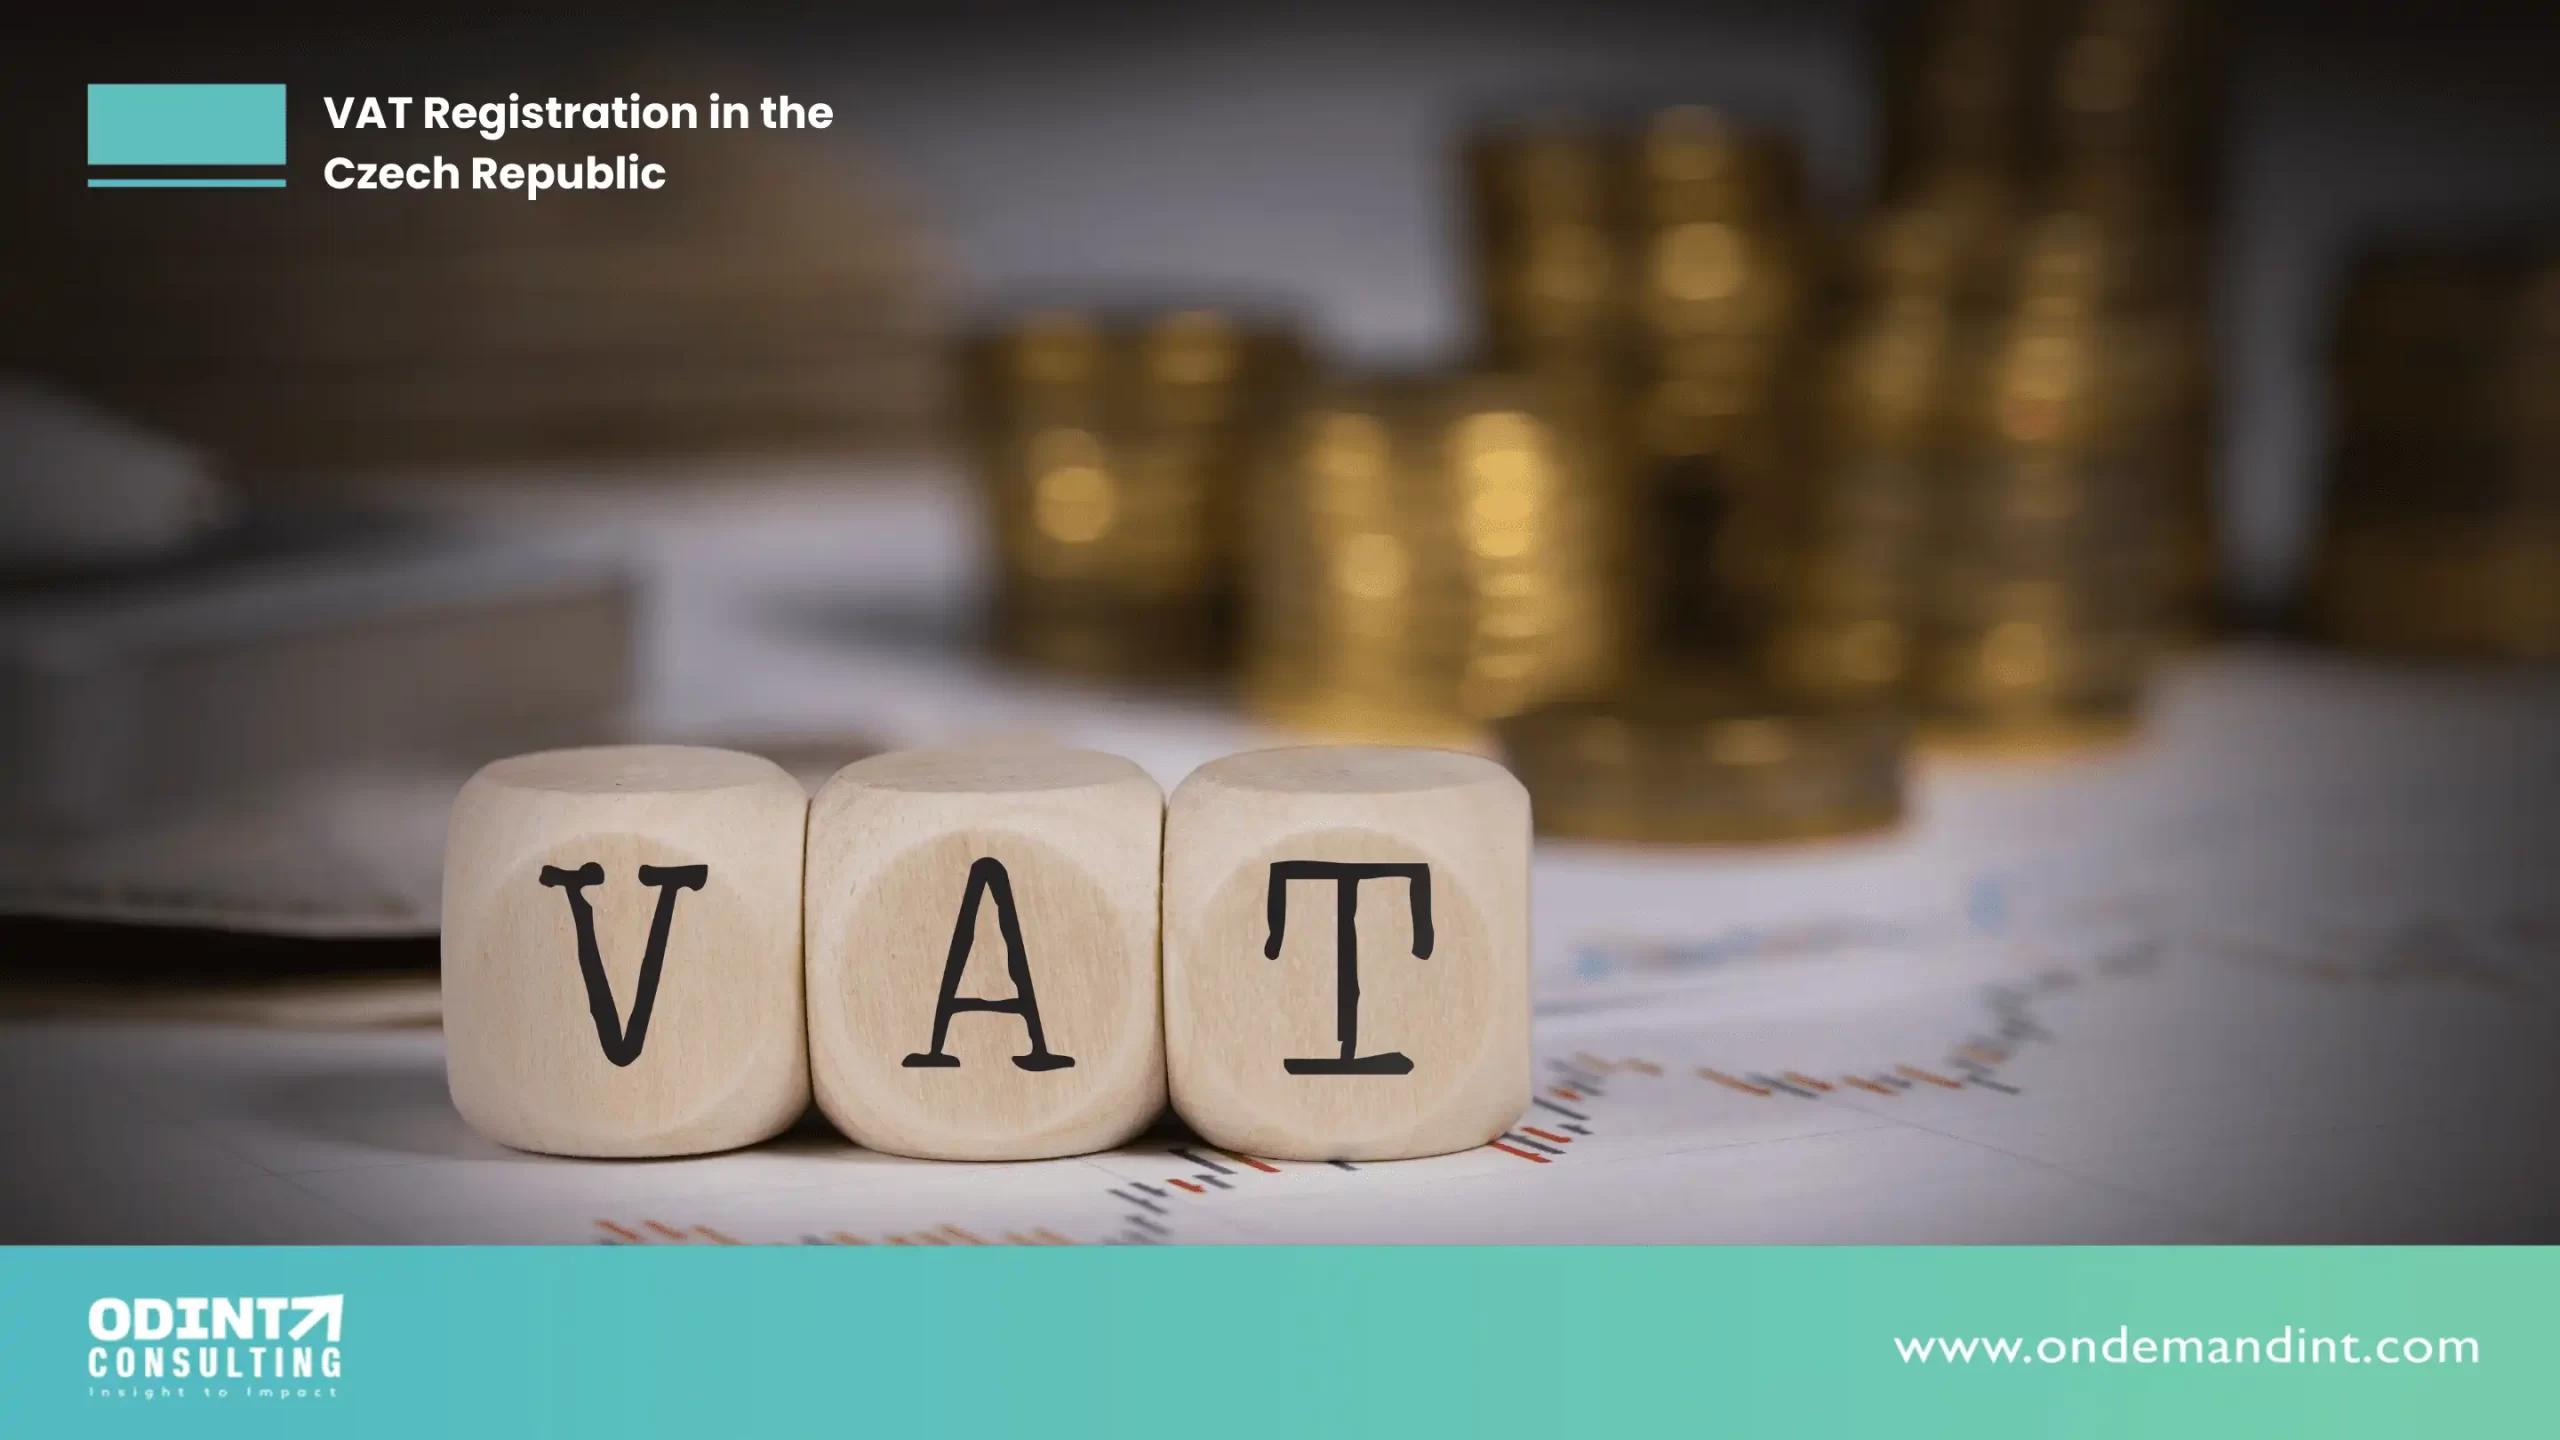 VAT Registration in the Czech Republic: Procedure, Benefits & Compliances